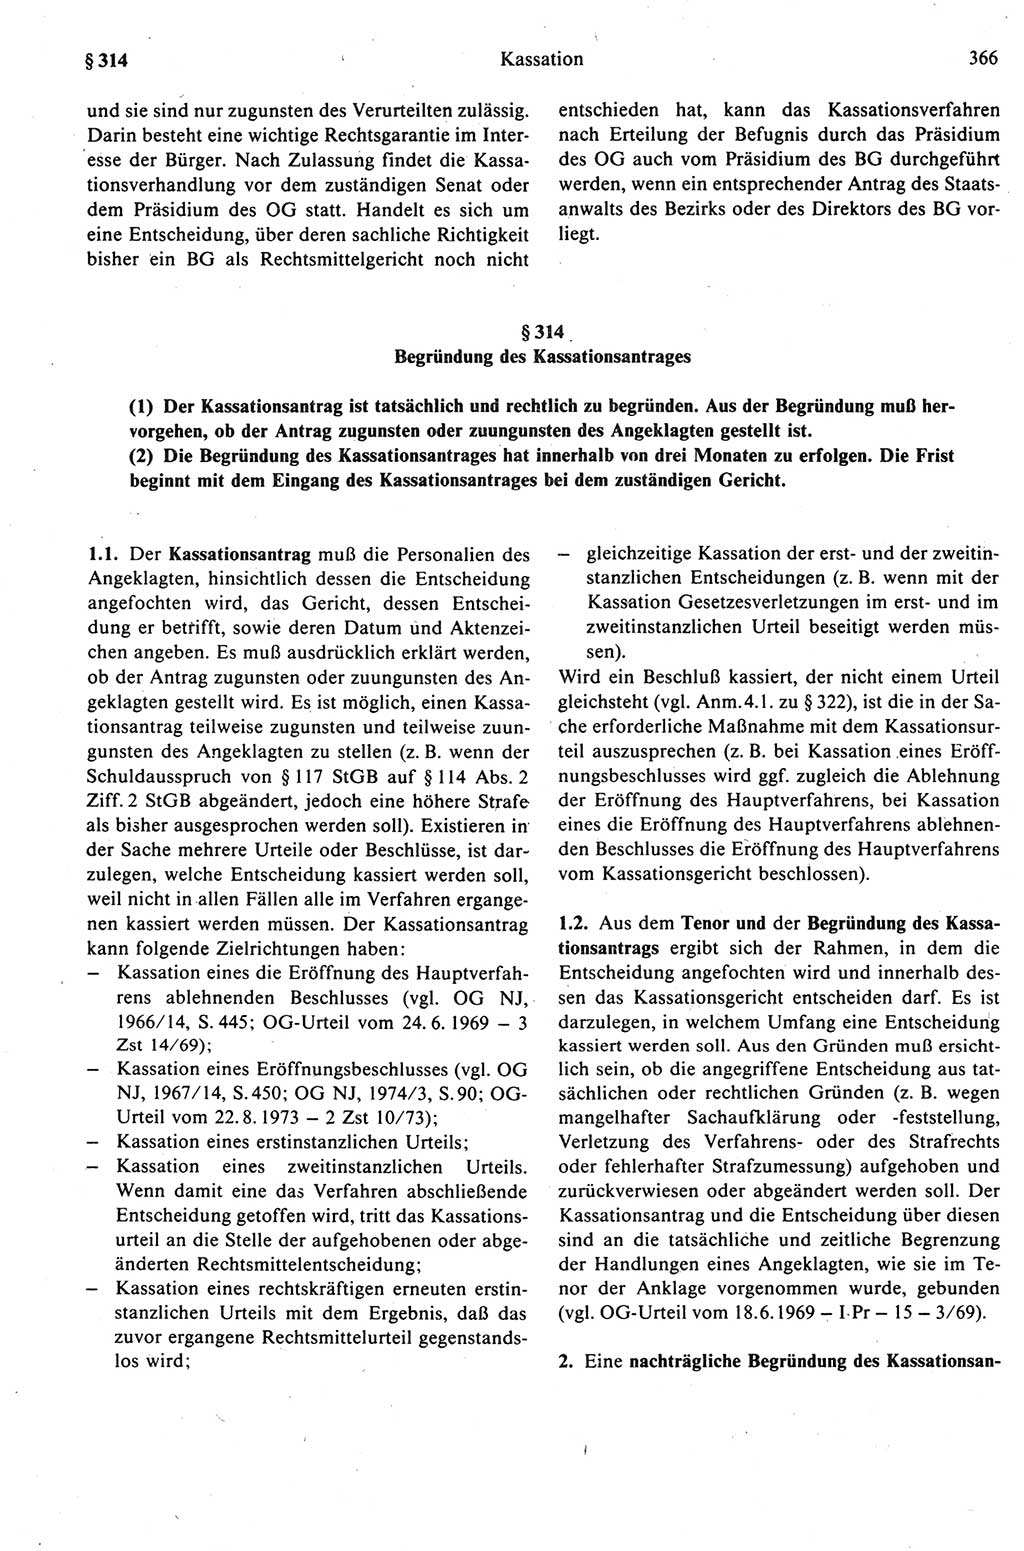 Strafprozeßrecht der DDR (Deutsche Demokratische Republik), Kommentar zur Strafprozeßordnung (StPO) 1989, Seite 366 (Strafprozeßr. DDR Komm. StPO 1989, S. 366)